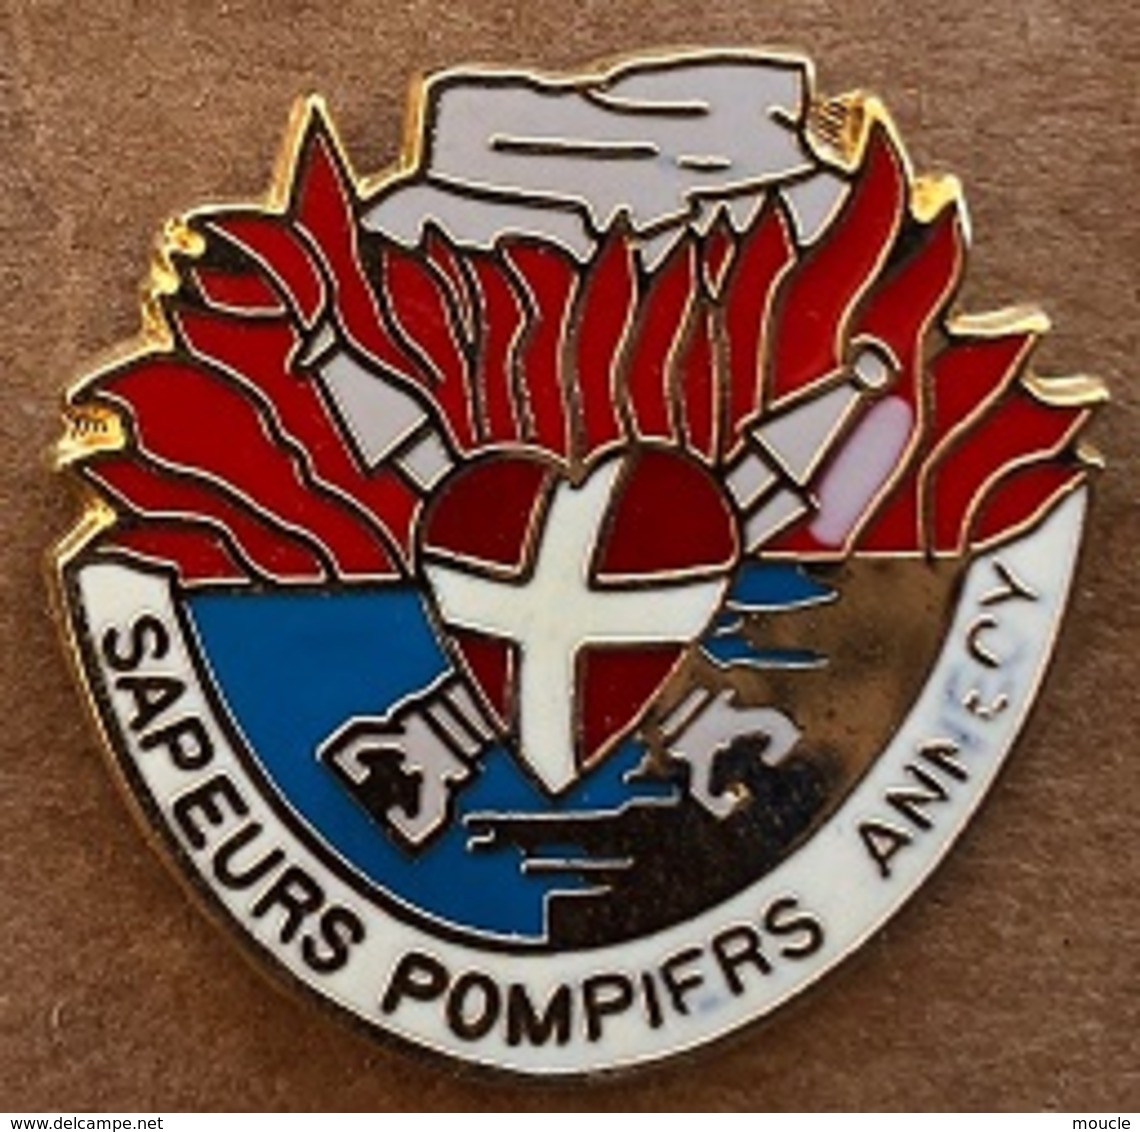 SAPEURS POMPIERS - ANNECY - DEPARTEMENT 74 - HAUTE SAVOIE - LAC - FRANCE -     - (24) - Firemen